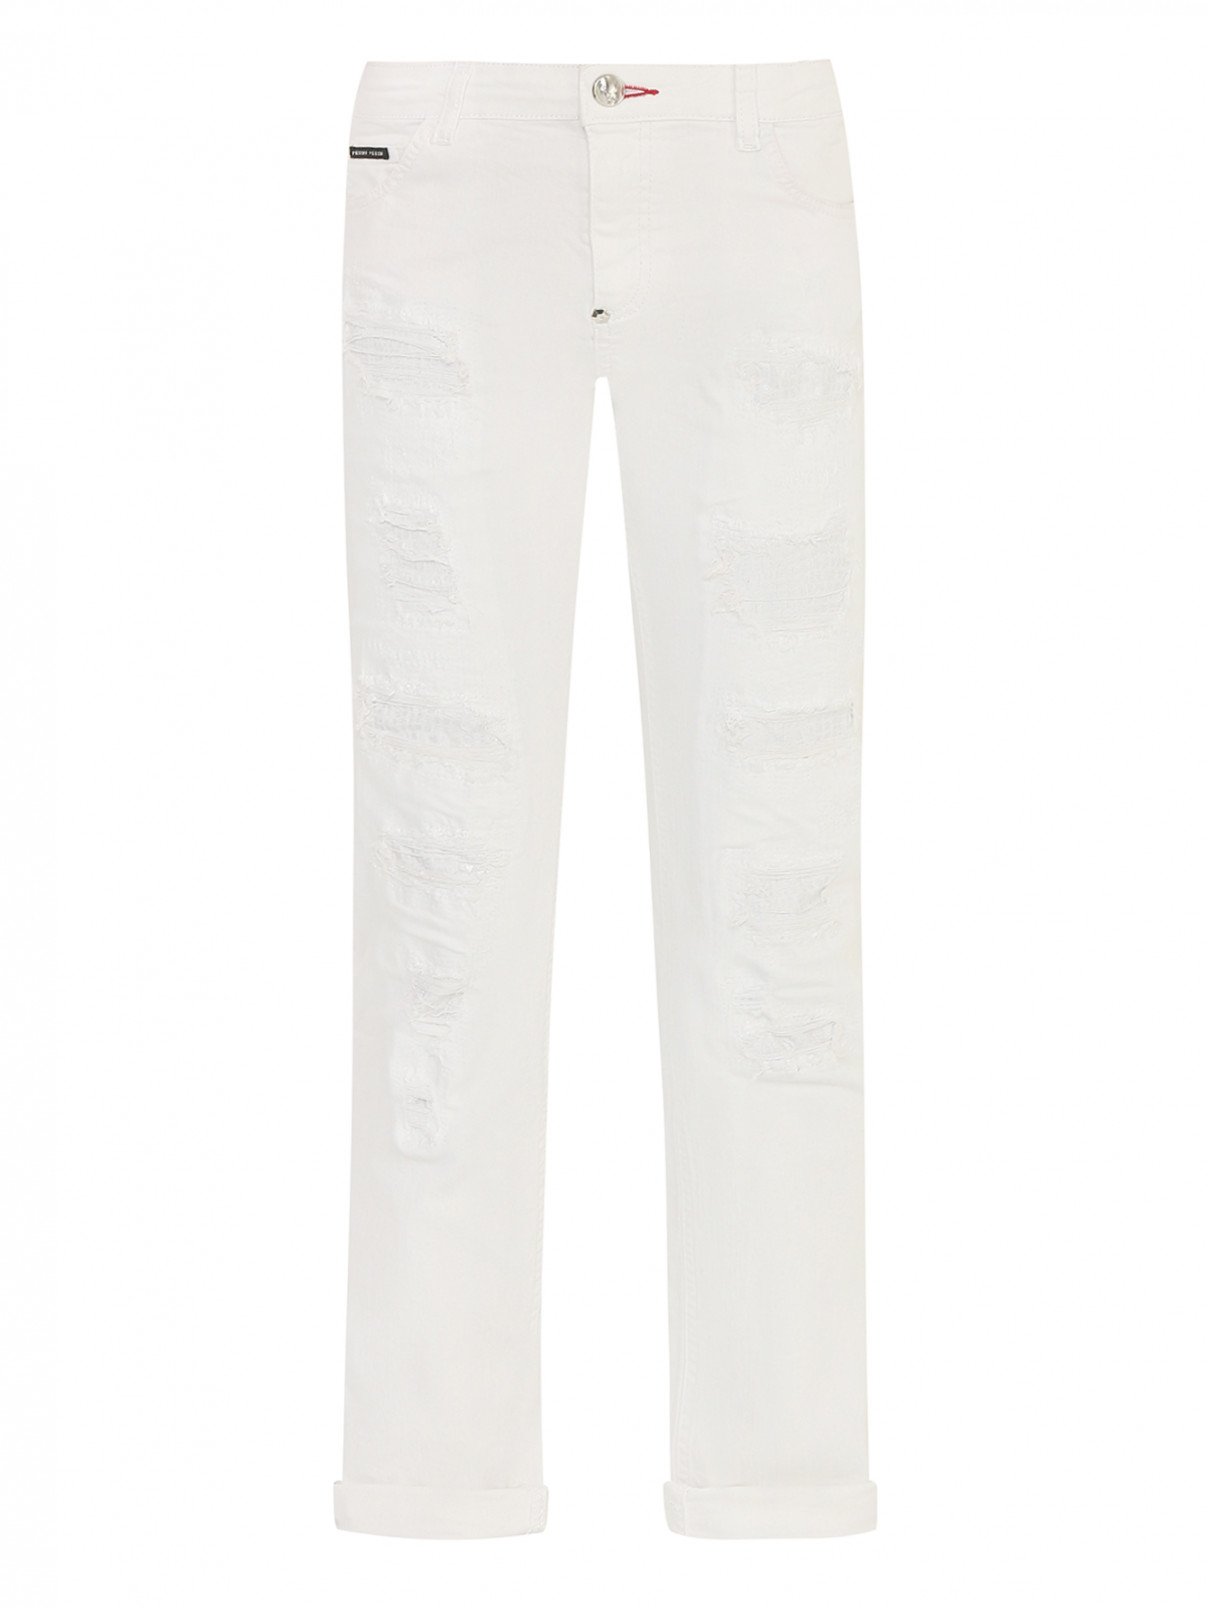 Прямые джинсы с разрезами Philipp Plein  –  Общий вид  – Цвет:  Белый